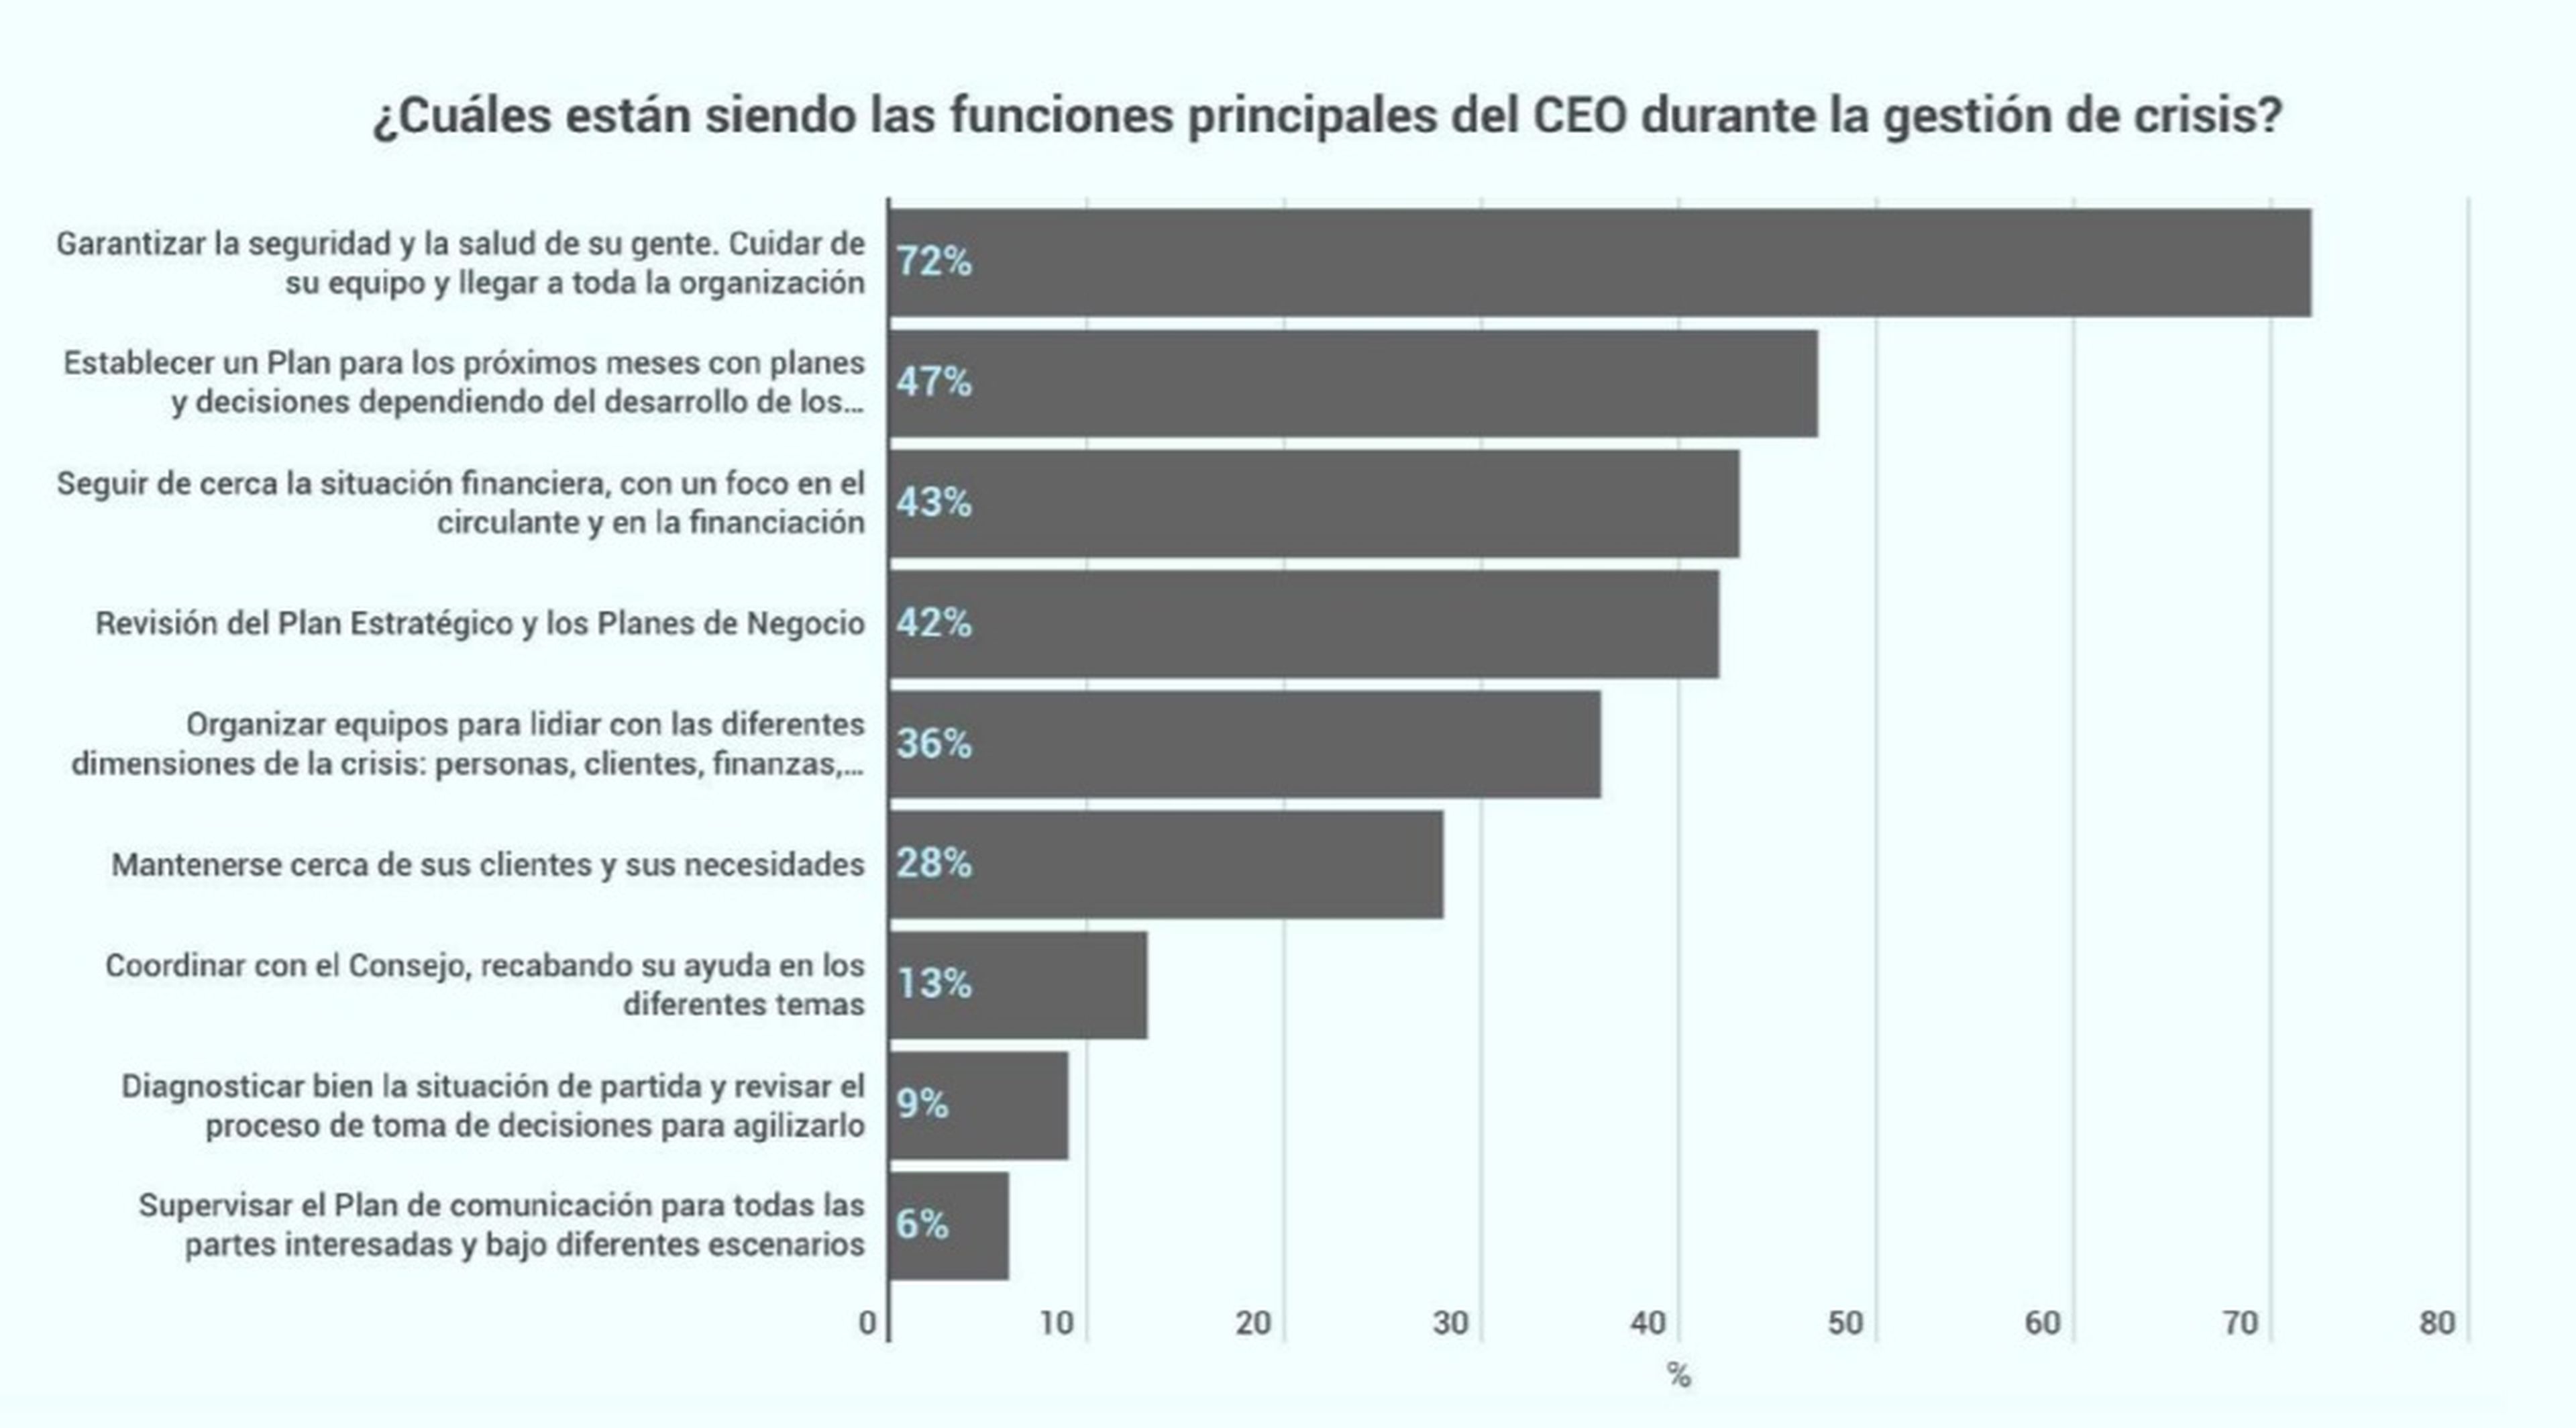 Respuestas recogidas en el informe sobre la funcion de los CEO